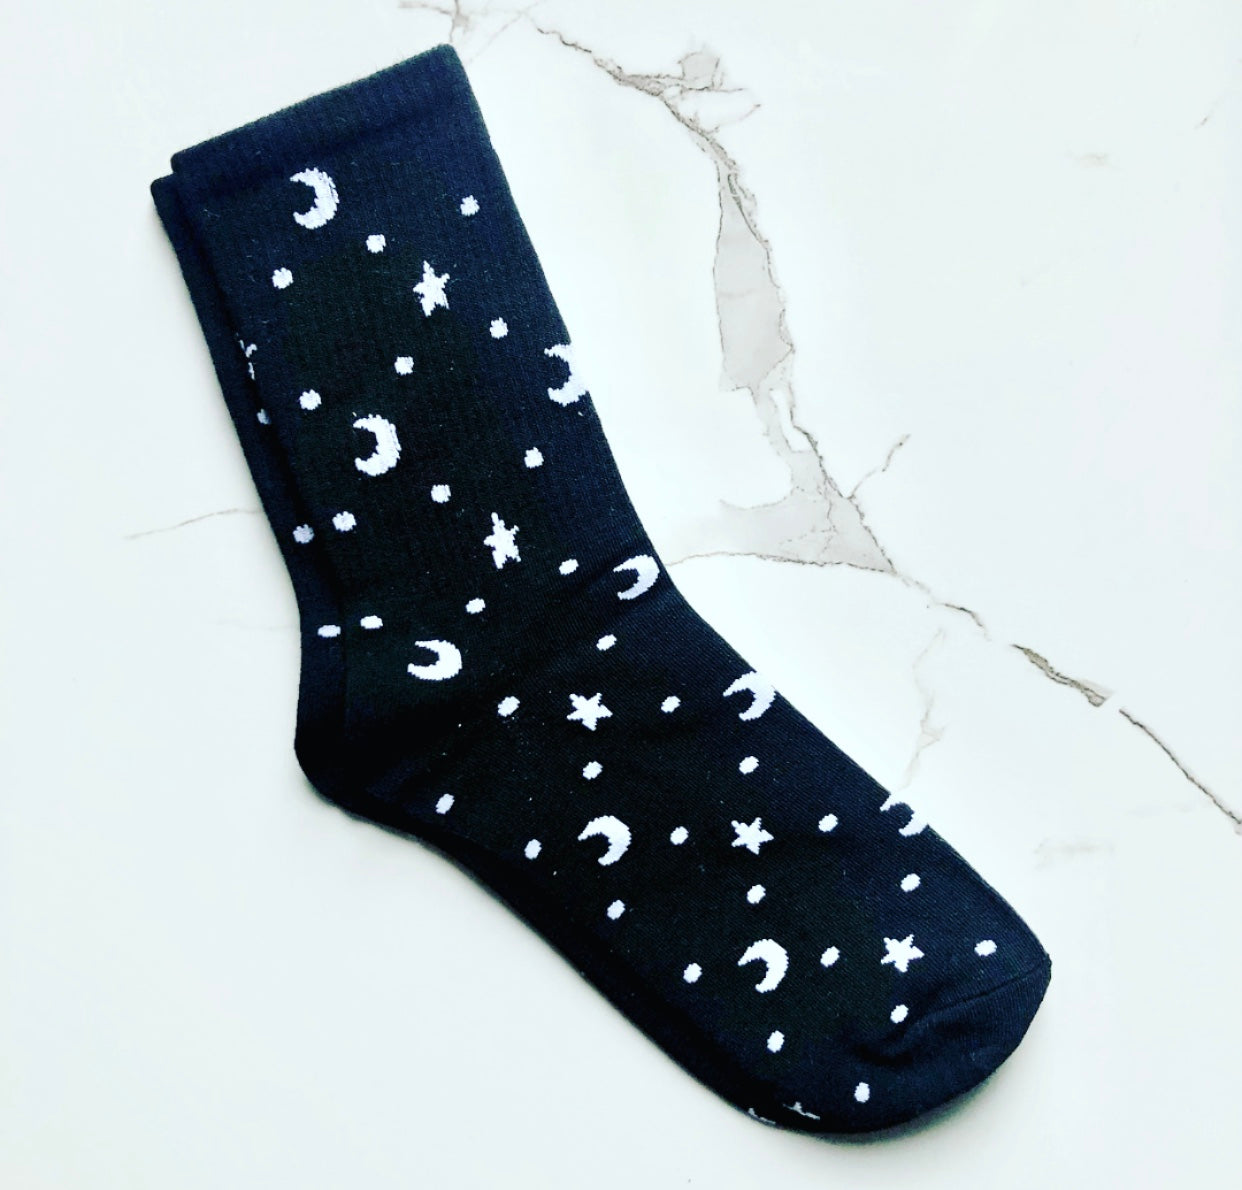 Astral Socks